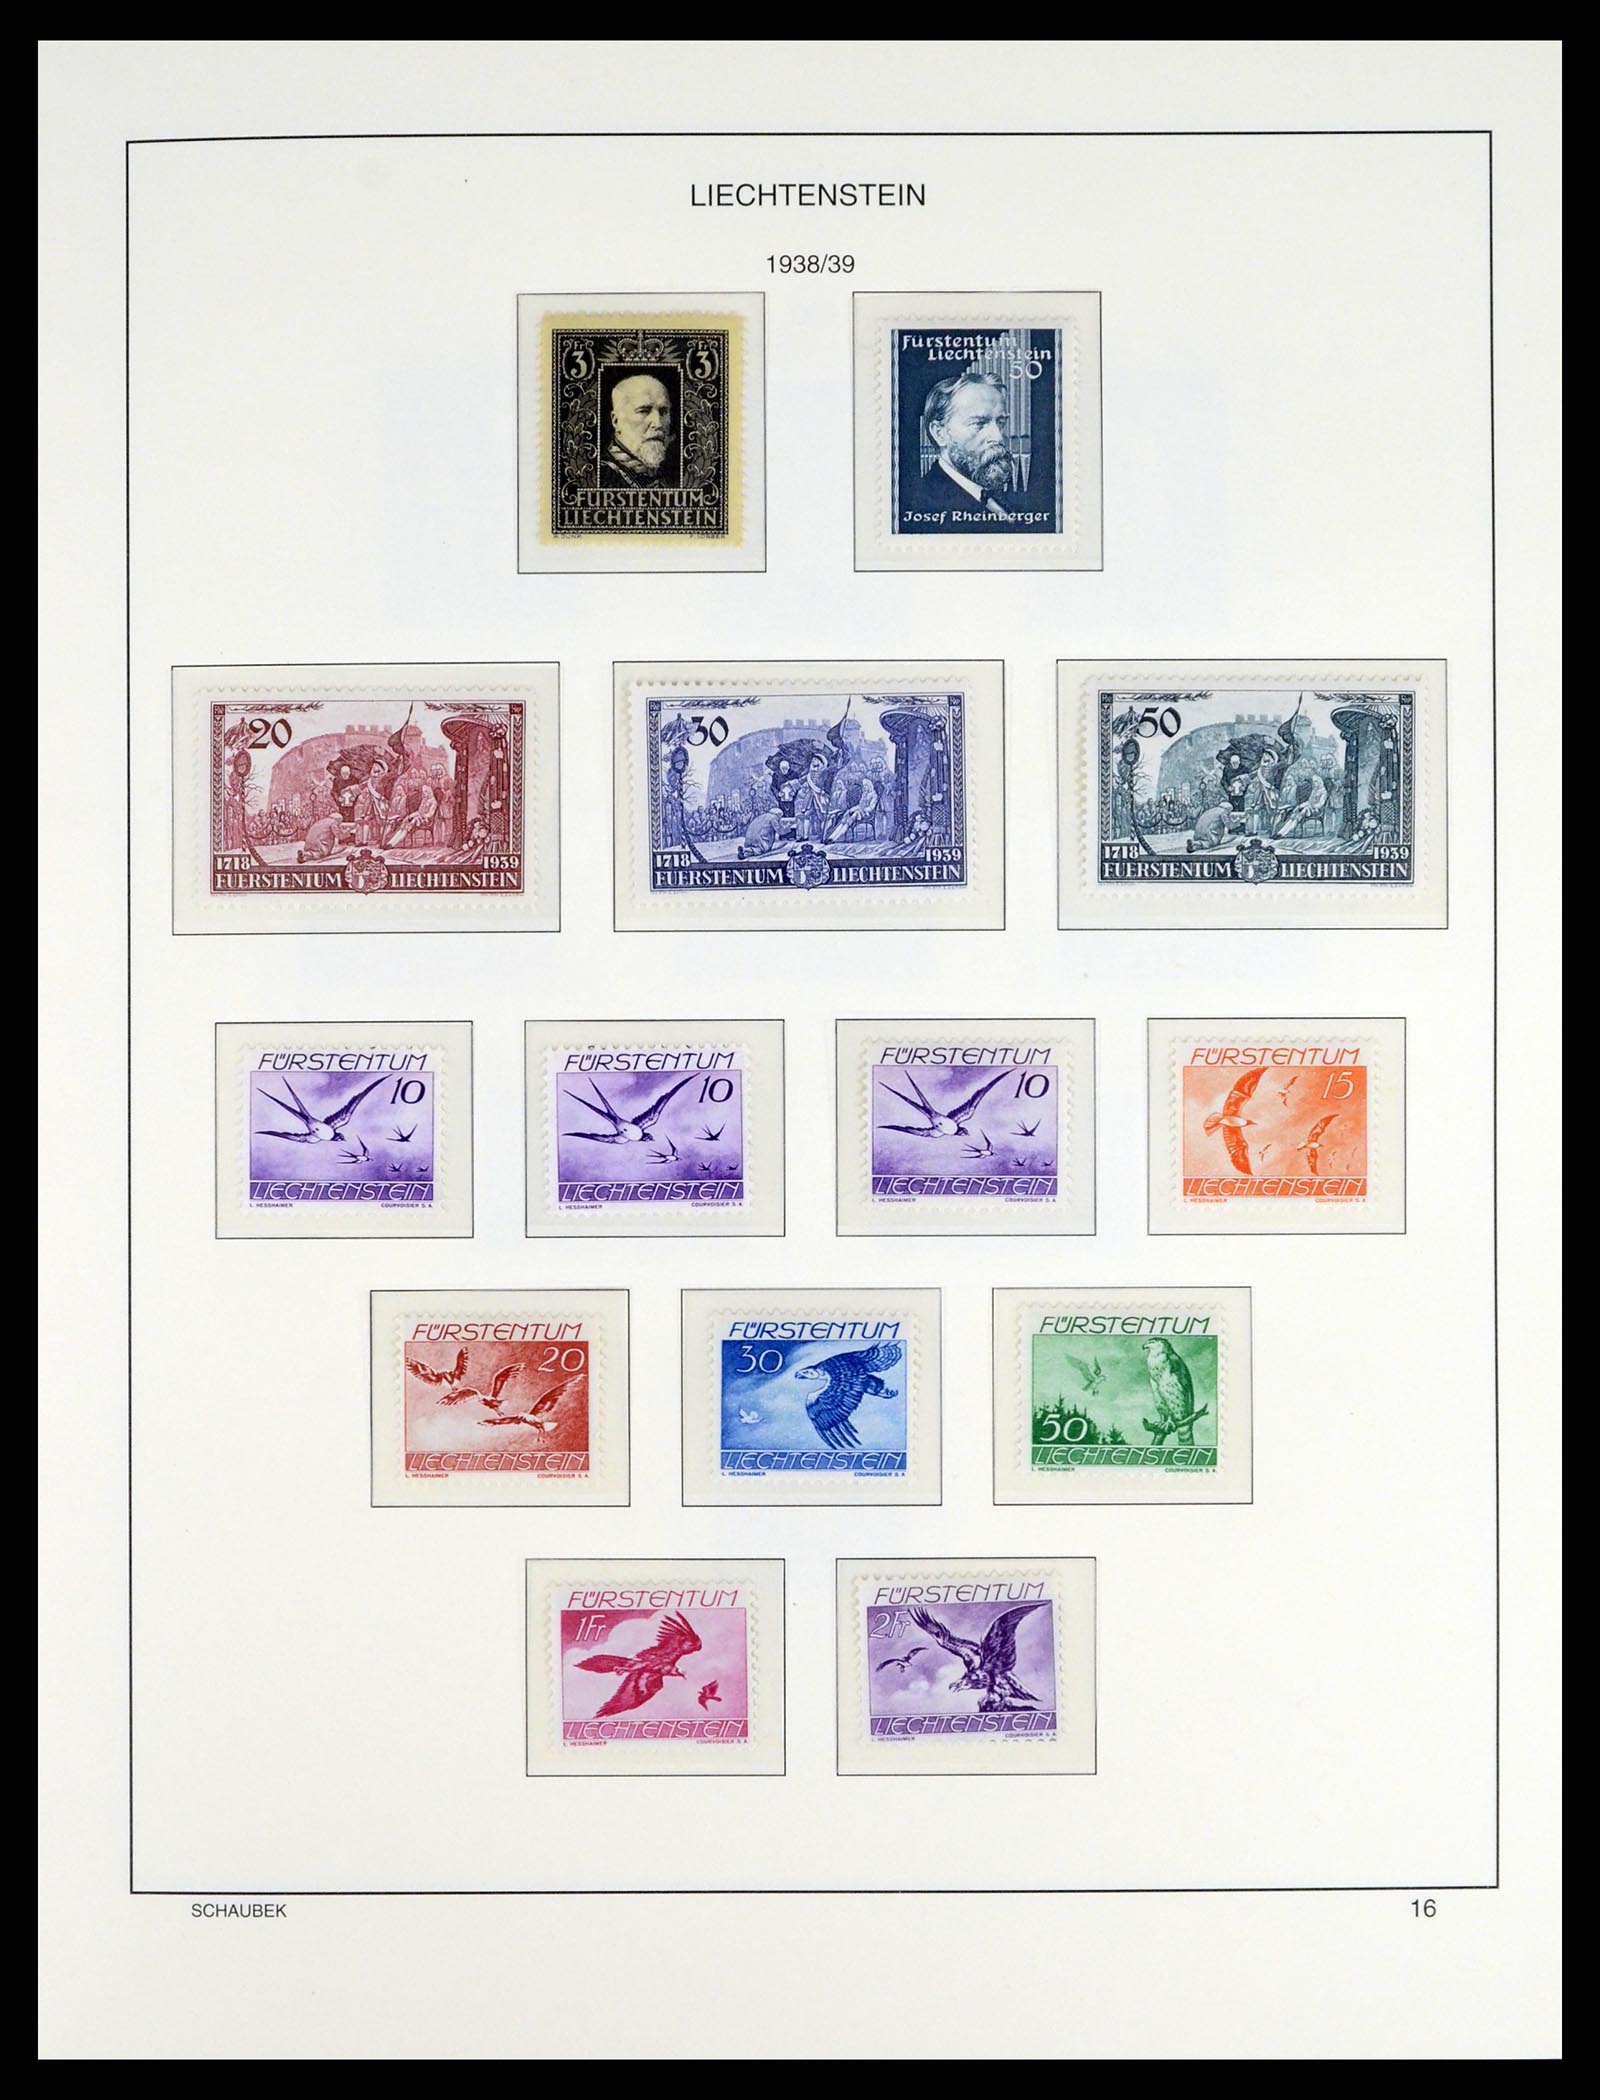 37547 019 - Stamp collection 37547 Liechtenstein 1912-2011.